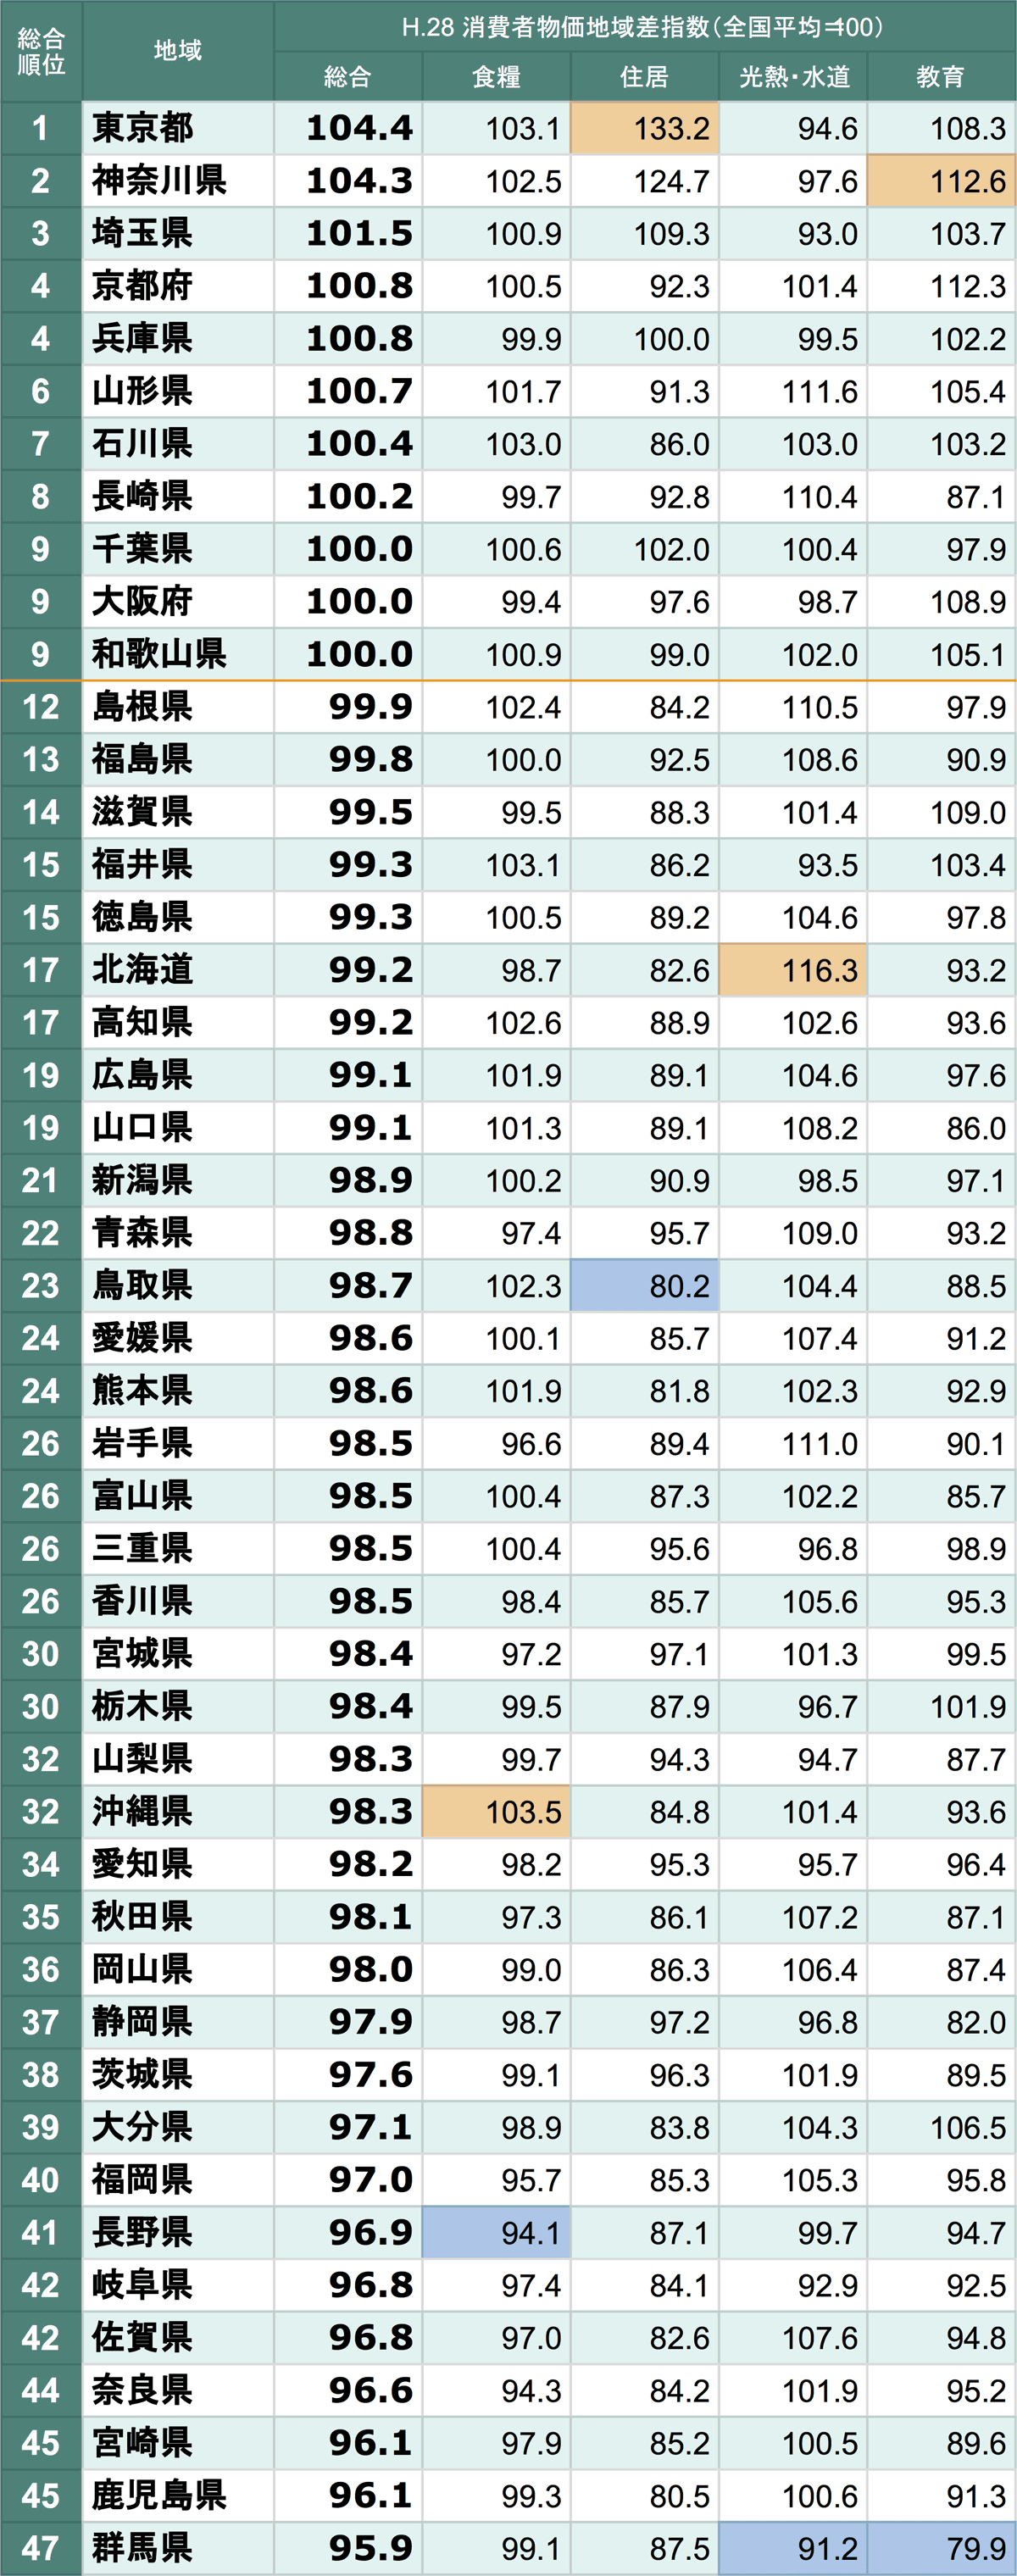 物価指数の都道府県別ランキングを作ってみた